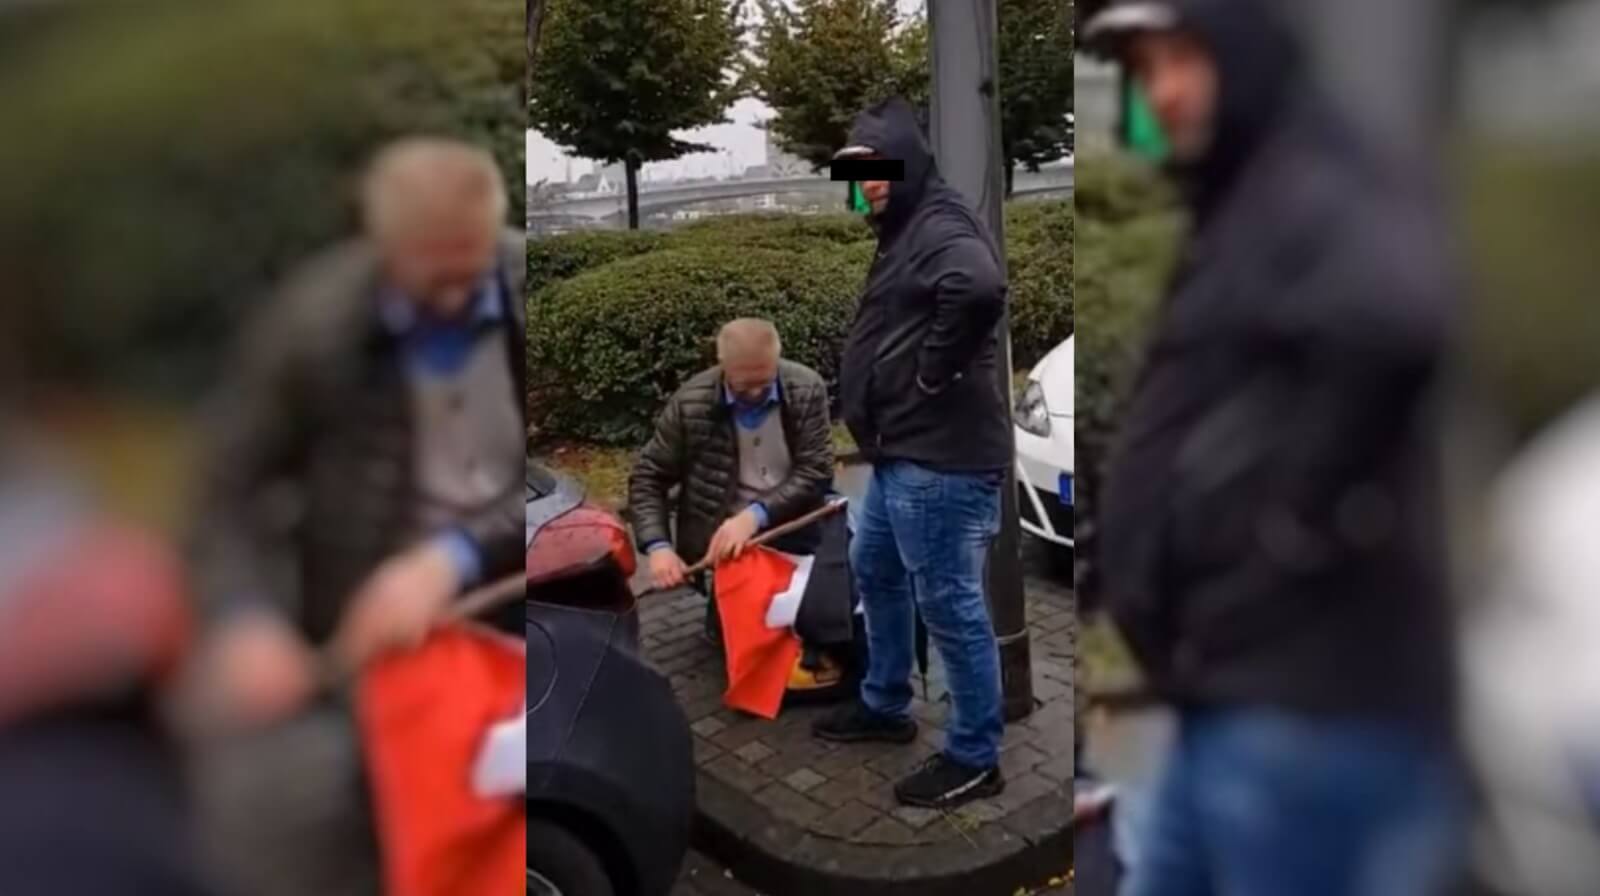 Diese beiden Männer seien WDR-Mitarbeiter und hätten eine Reichsflagge zu einer Demonstration mitgebracht, um TV-Bilder inszenieren, wird in Sozialen Netzwerken behauptet. Das ist falsch.